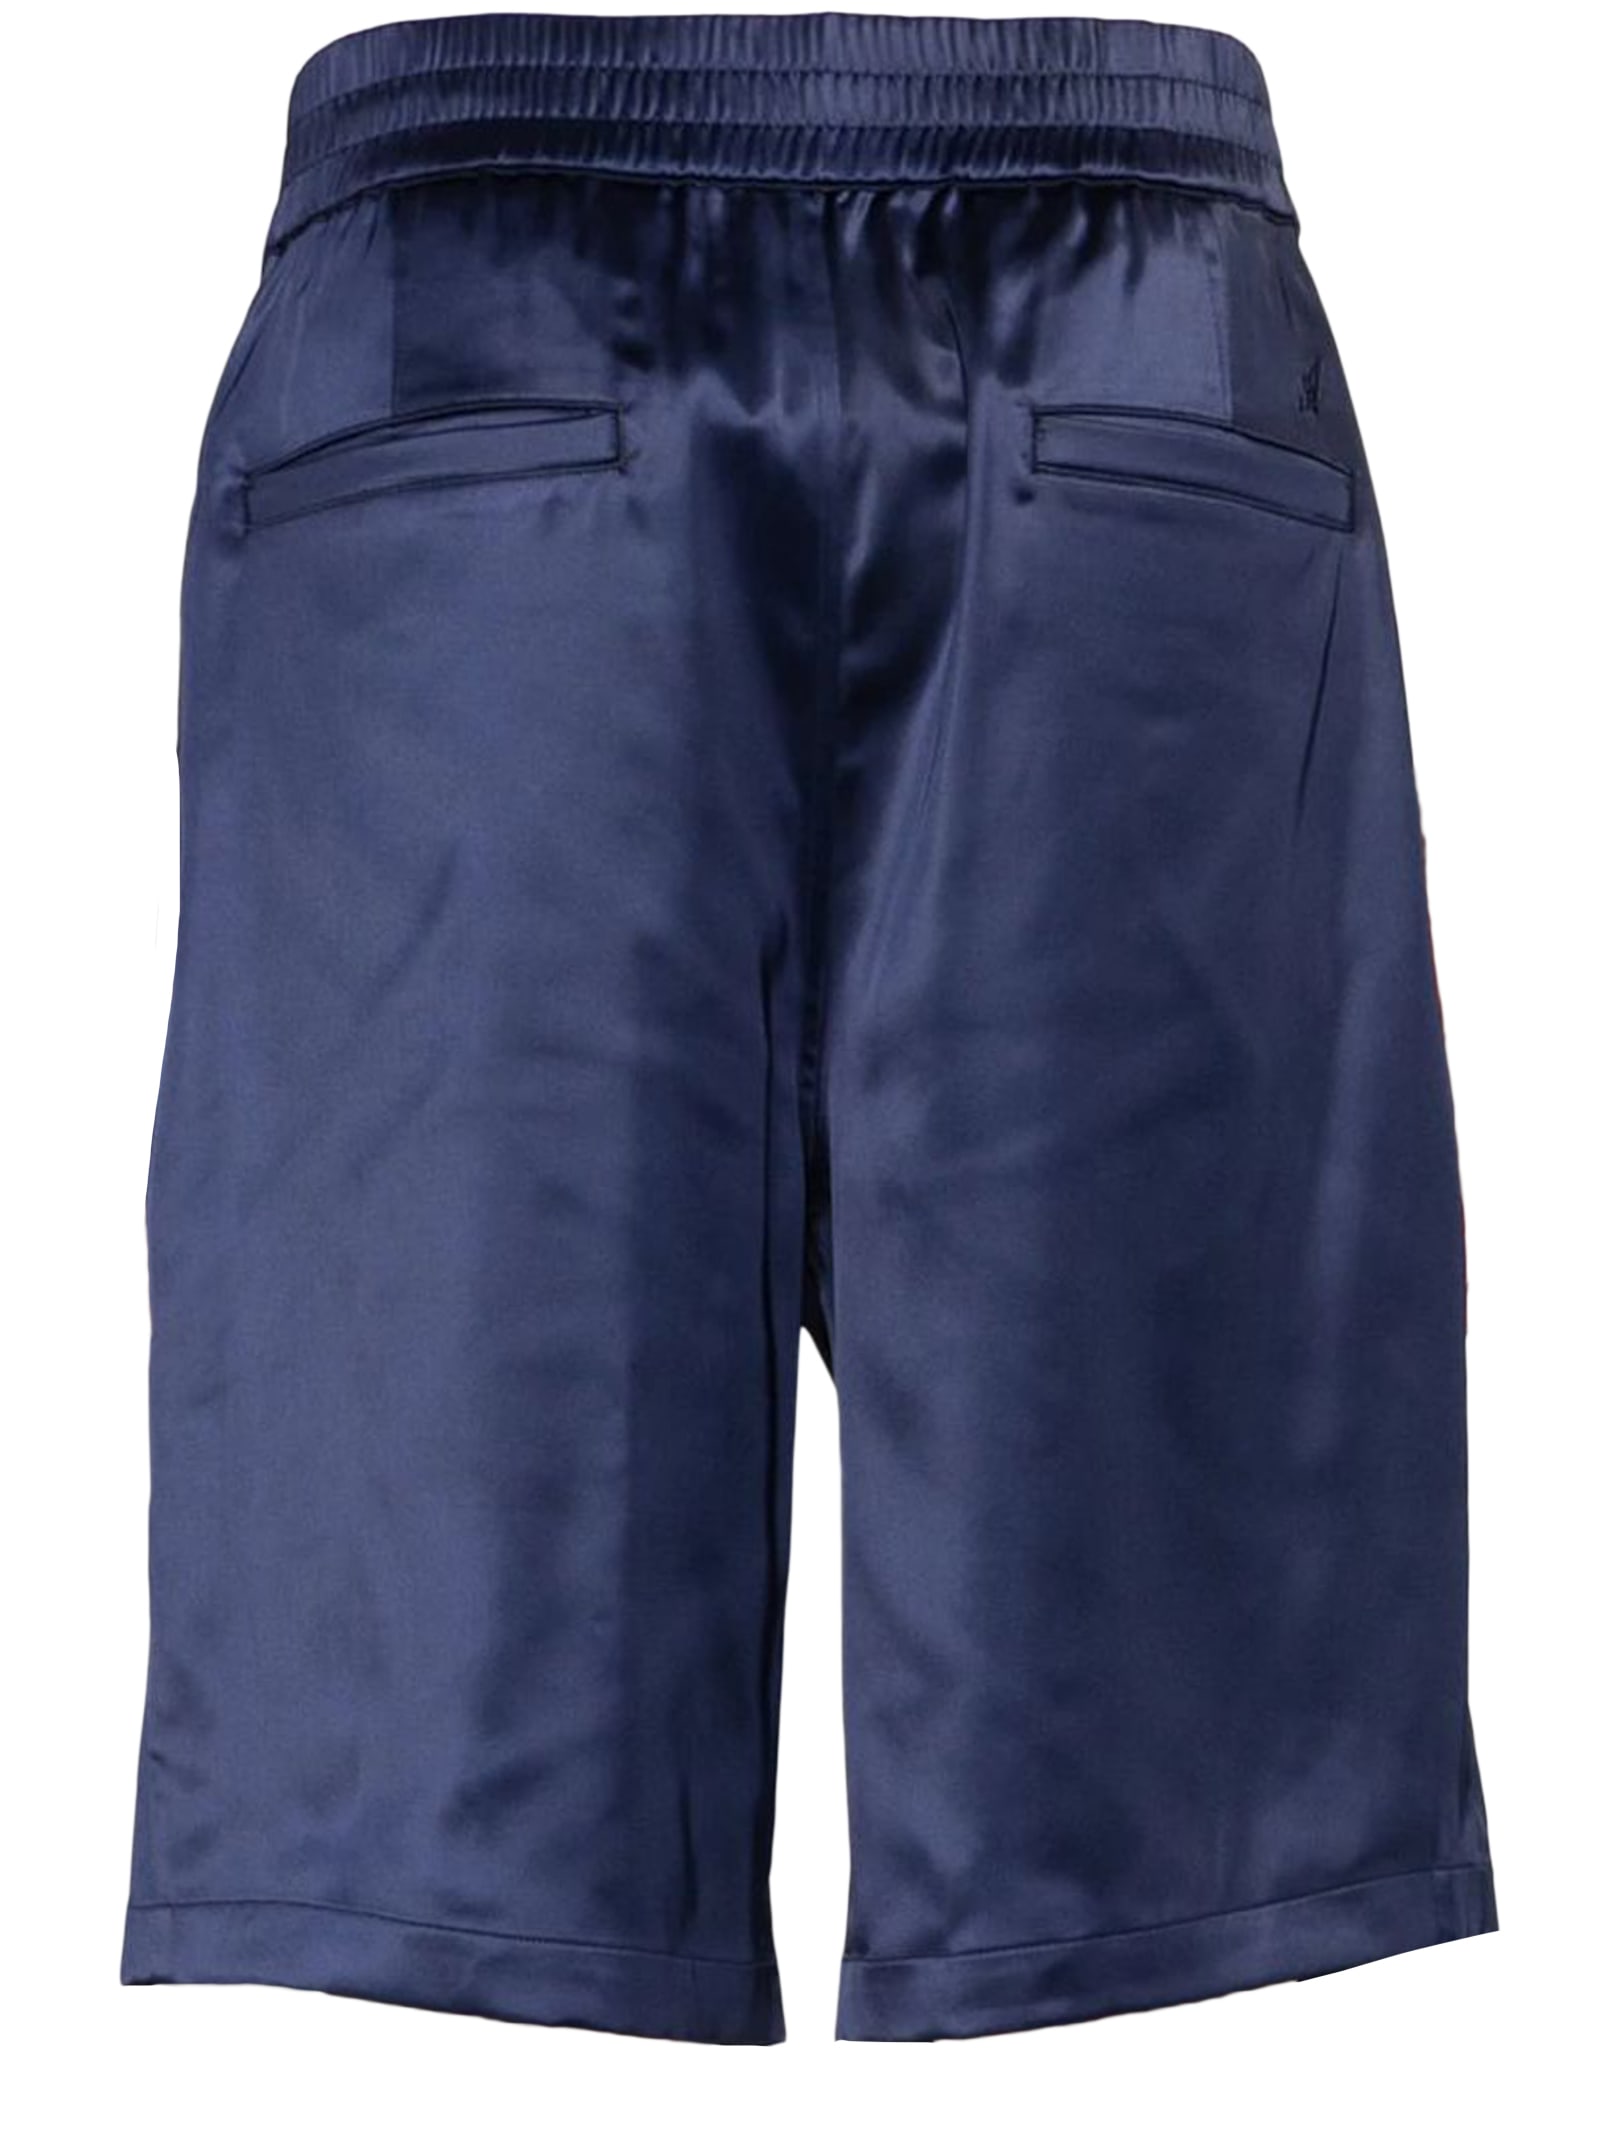 Shop Axel Arigato Shorts Blue